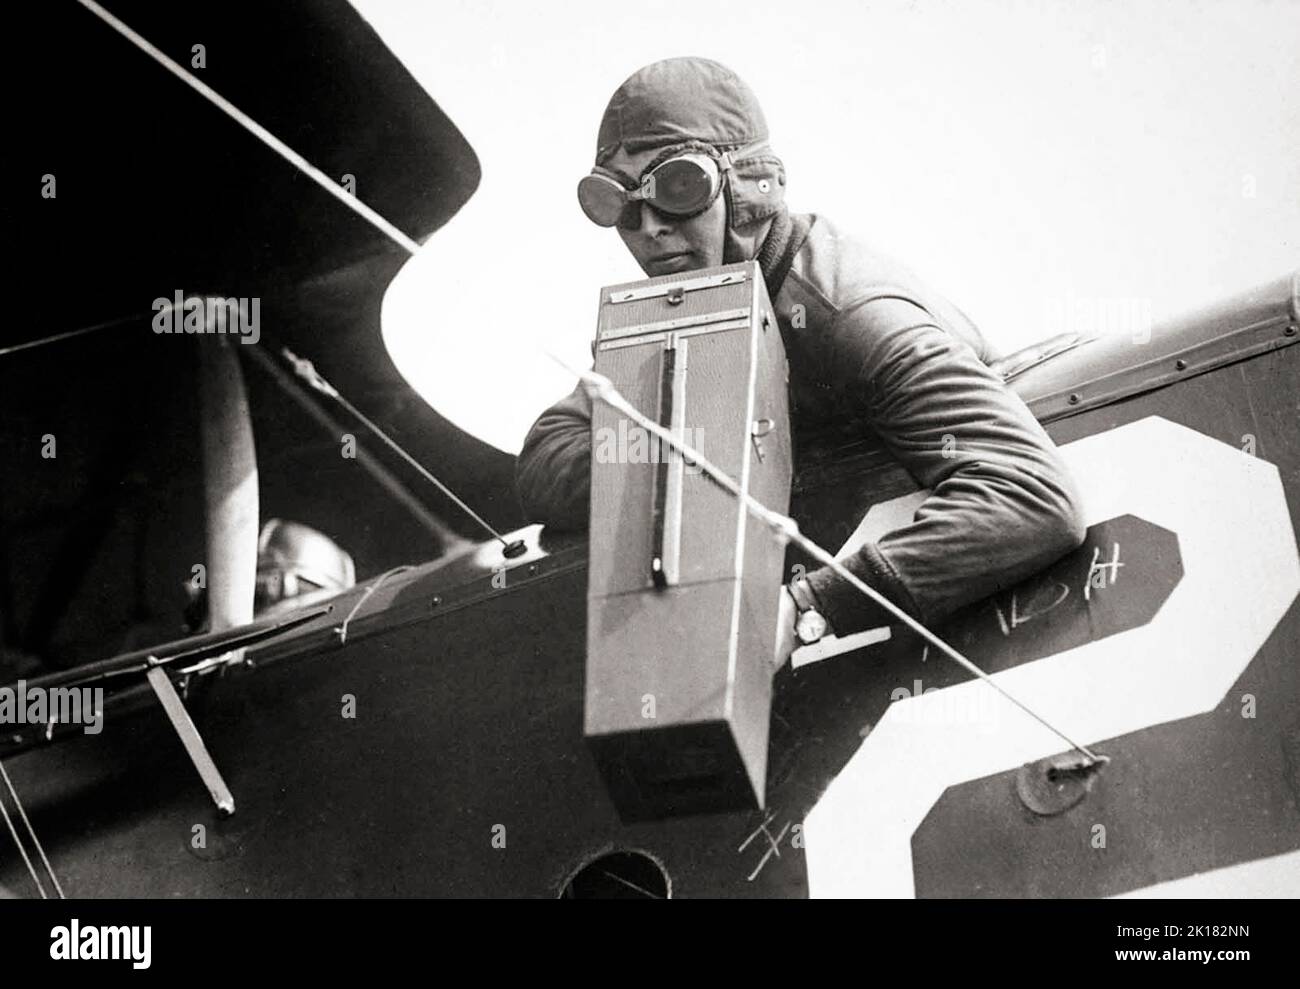 Un fotógrafo aéreo con una cámara Graflex Model A erial, ca. 1917-18. La cámara grande cubierta de cuero con cuerpo de madera fue una de las cámaras aéreas pioneras, ampliamente utilizadas por el Cuerpo Aéreo del Ejército de los Estados Unidos. Activado por un disparador de tipo pistola, el obturador del plano focal se disparó mientras se abrían las dos persianas protectoras de la parte delantera de la cámara. El formato 4x5' con reverso Graflex permite utilizar soportes de placas estándar de doble cara, así como un cargador de 12 placas 'bag mag'. Foto de stock